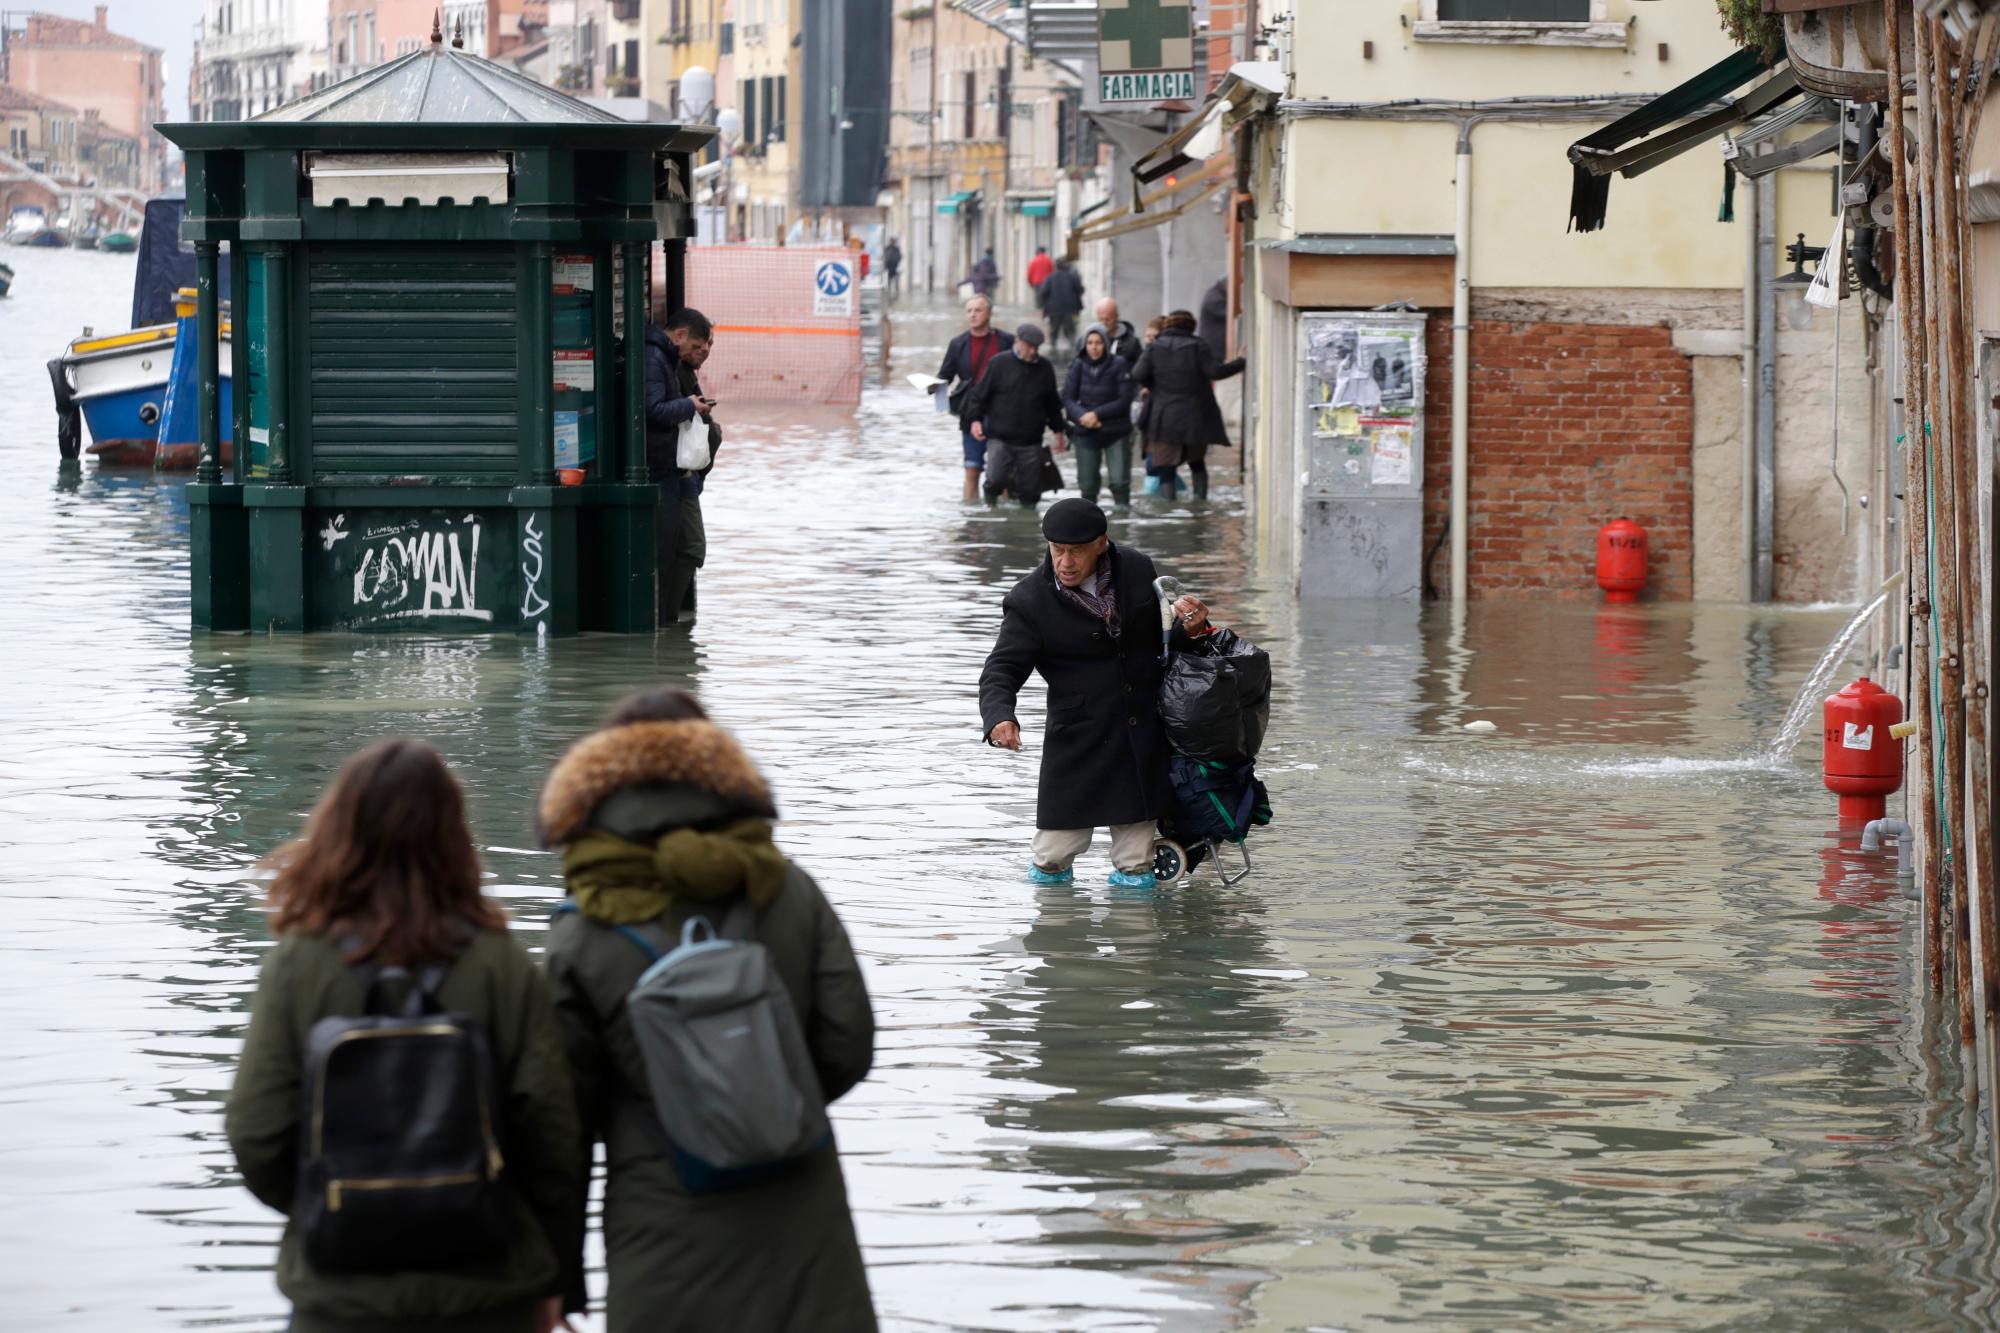 La gente vadea el agua durante una marea alta, en Venecia, el miércoles 13 de noviembre de 2019. La marca de la marea alta golpeó 187 centímetros (74 pulgadas) el martes 12 de noviembre de 2019, lo que significa que más del 85% de la ciudad estaba inundado El nivel más alto jamás registrado fue de 194 centímetros (76 pulgadas) durante las inundaciones infames en 1966.